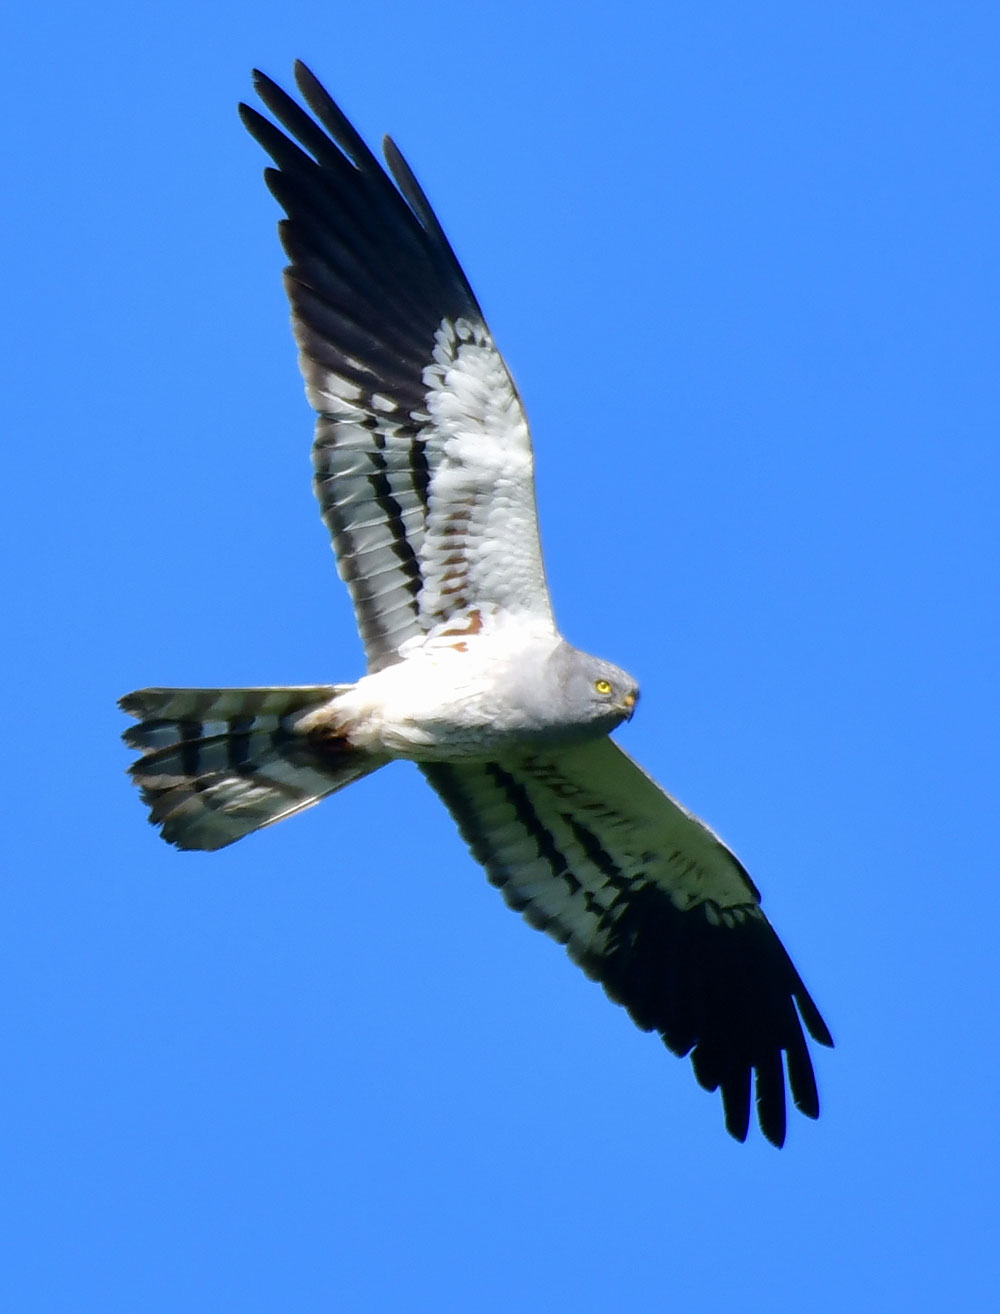 Mittig im Bild ist eine fliegende männliche Wiesenweihe fotografiert. Ihre ausgedehnten dunkel-schwarzen Flügelspitzen und das blaugraue Gefieder glänzen im Sonnenlicht und mit den Flugbewegungen.